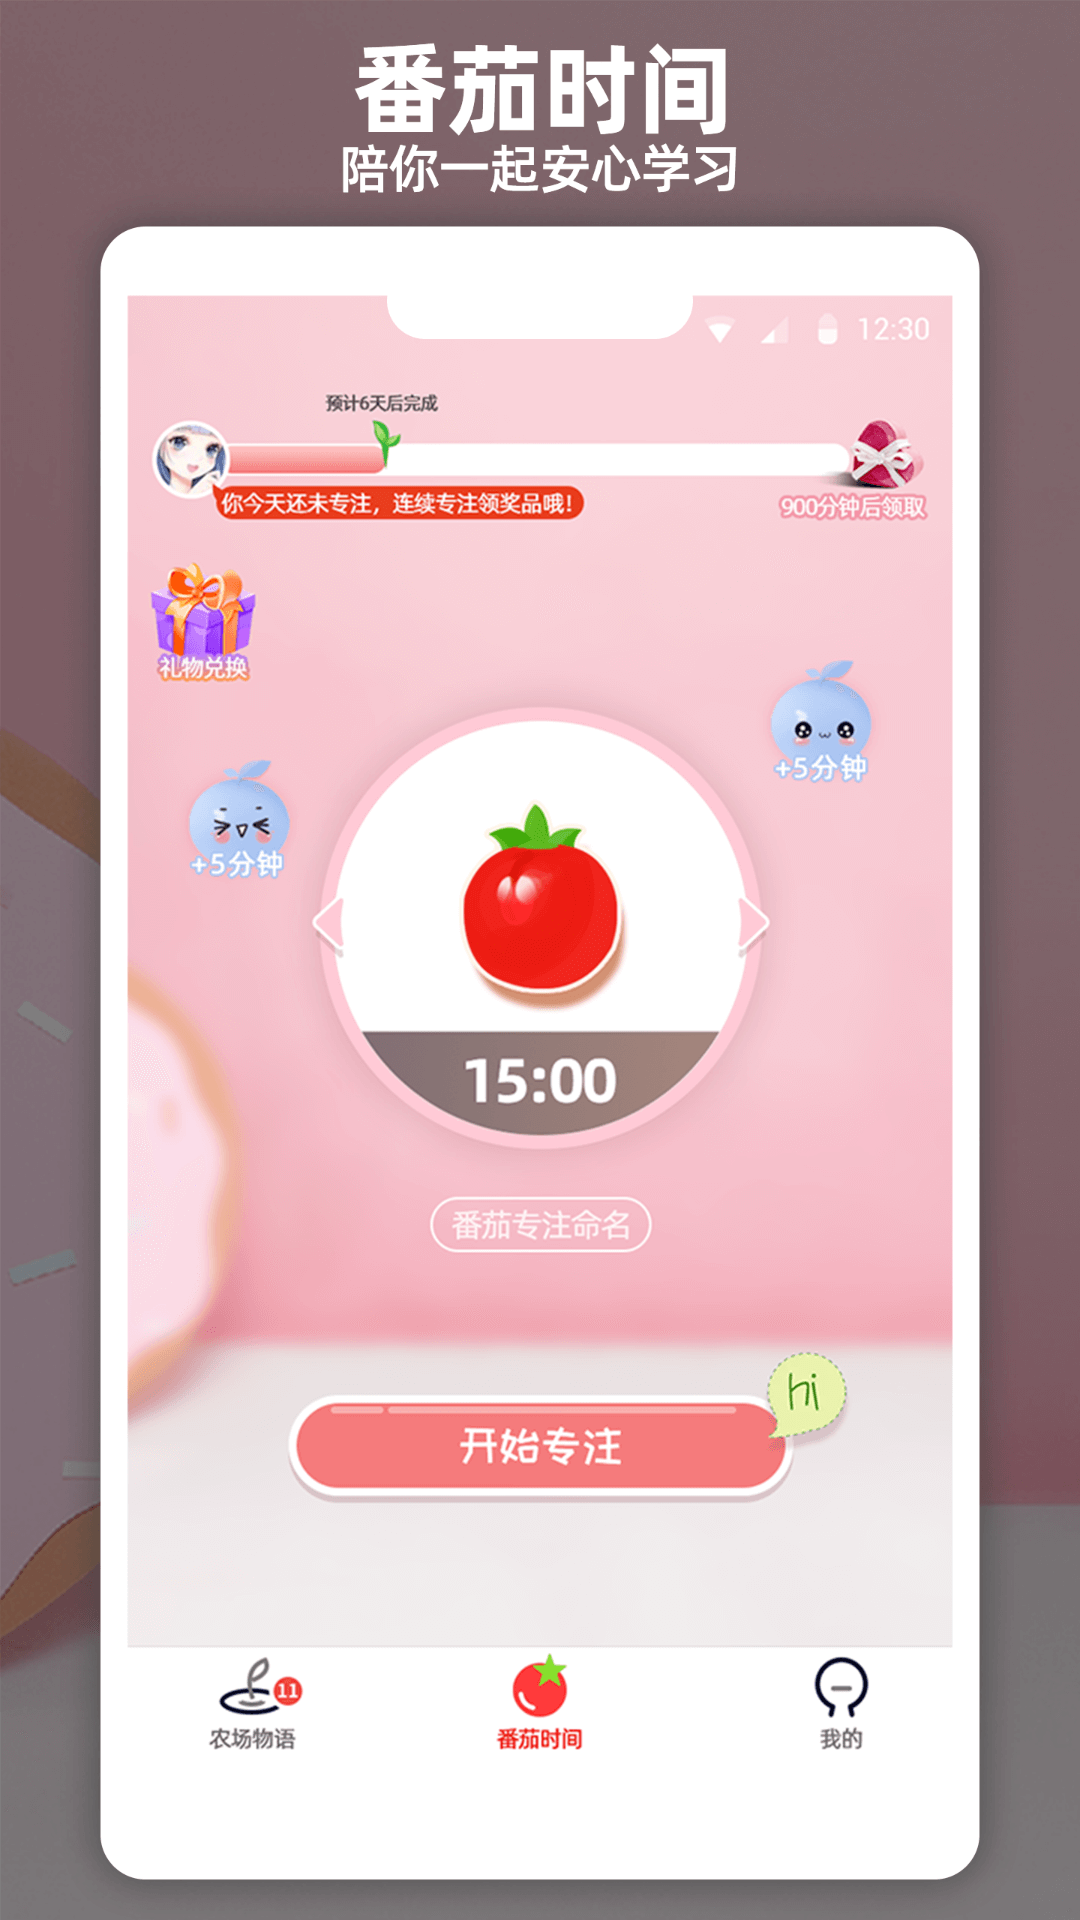 番茄时间管理app下载手机版图片1